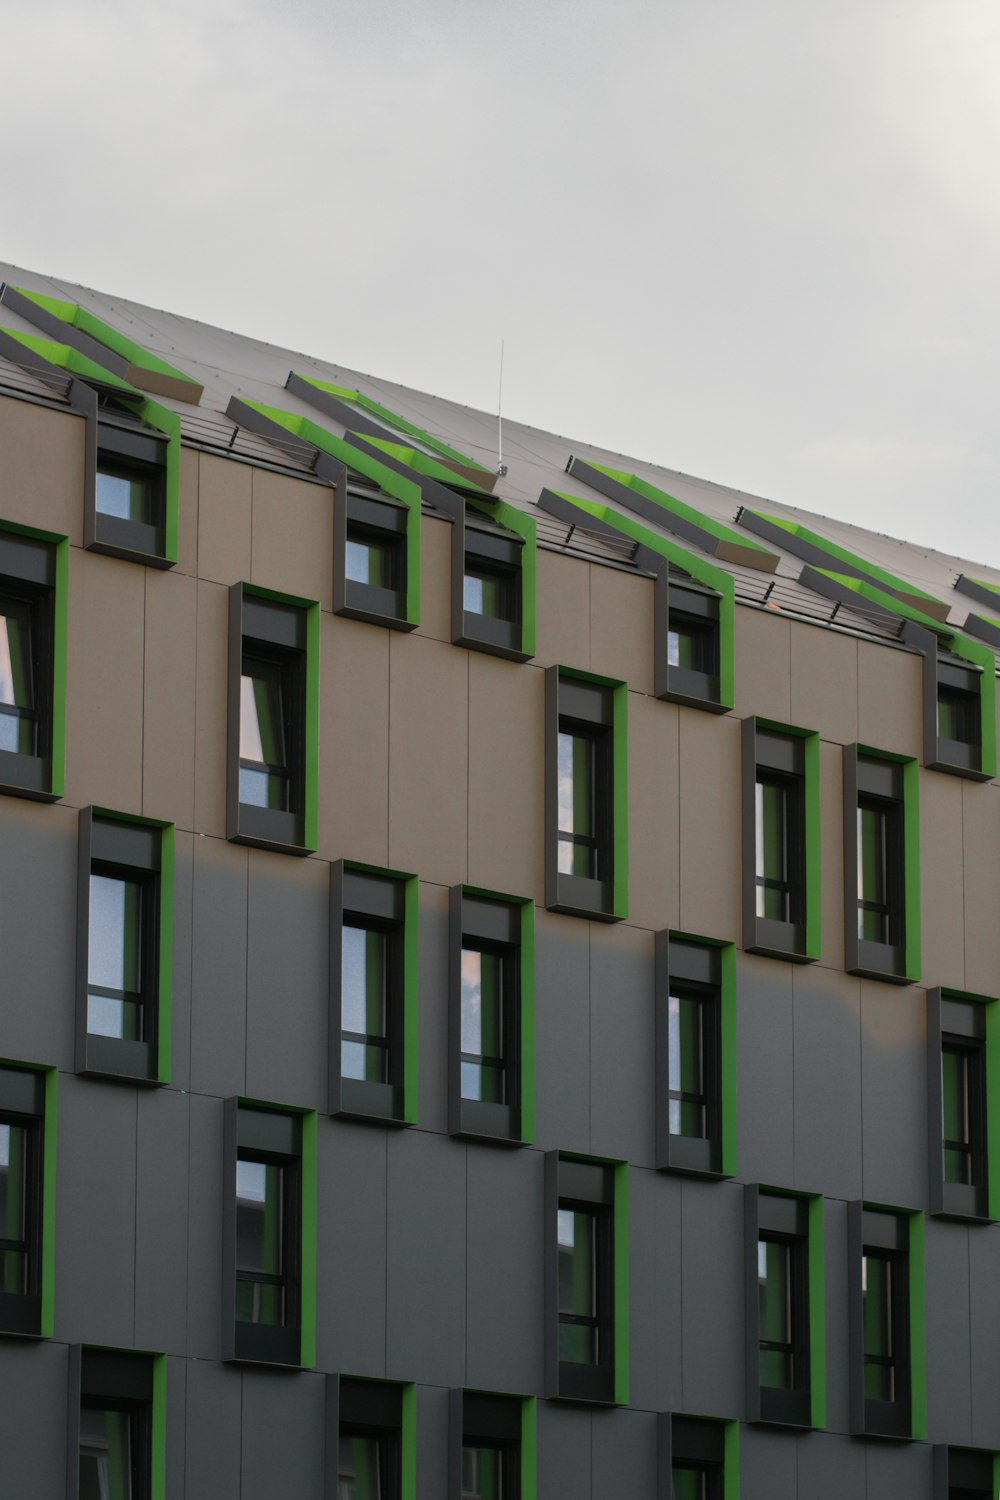 Un edificio alto con muchas ventanas y adornos verdes